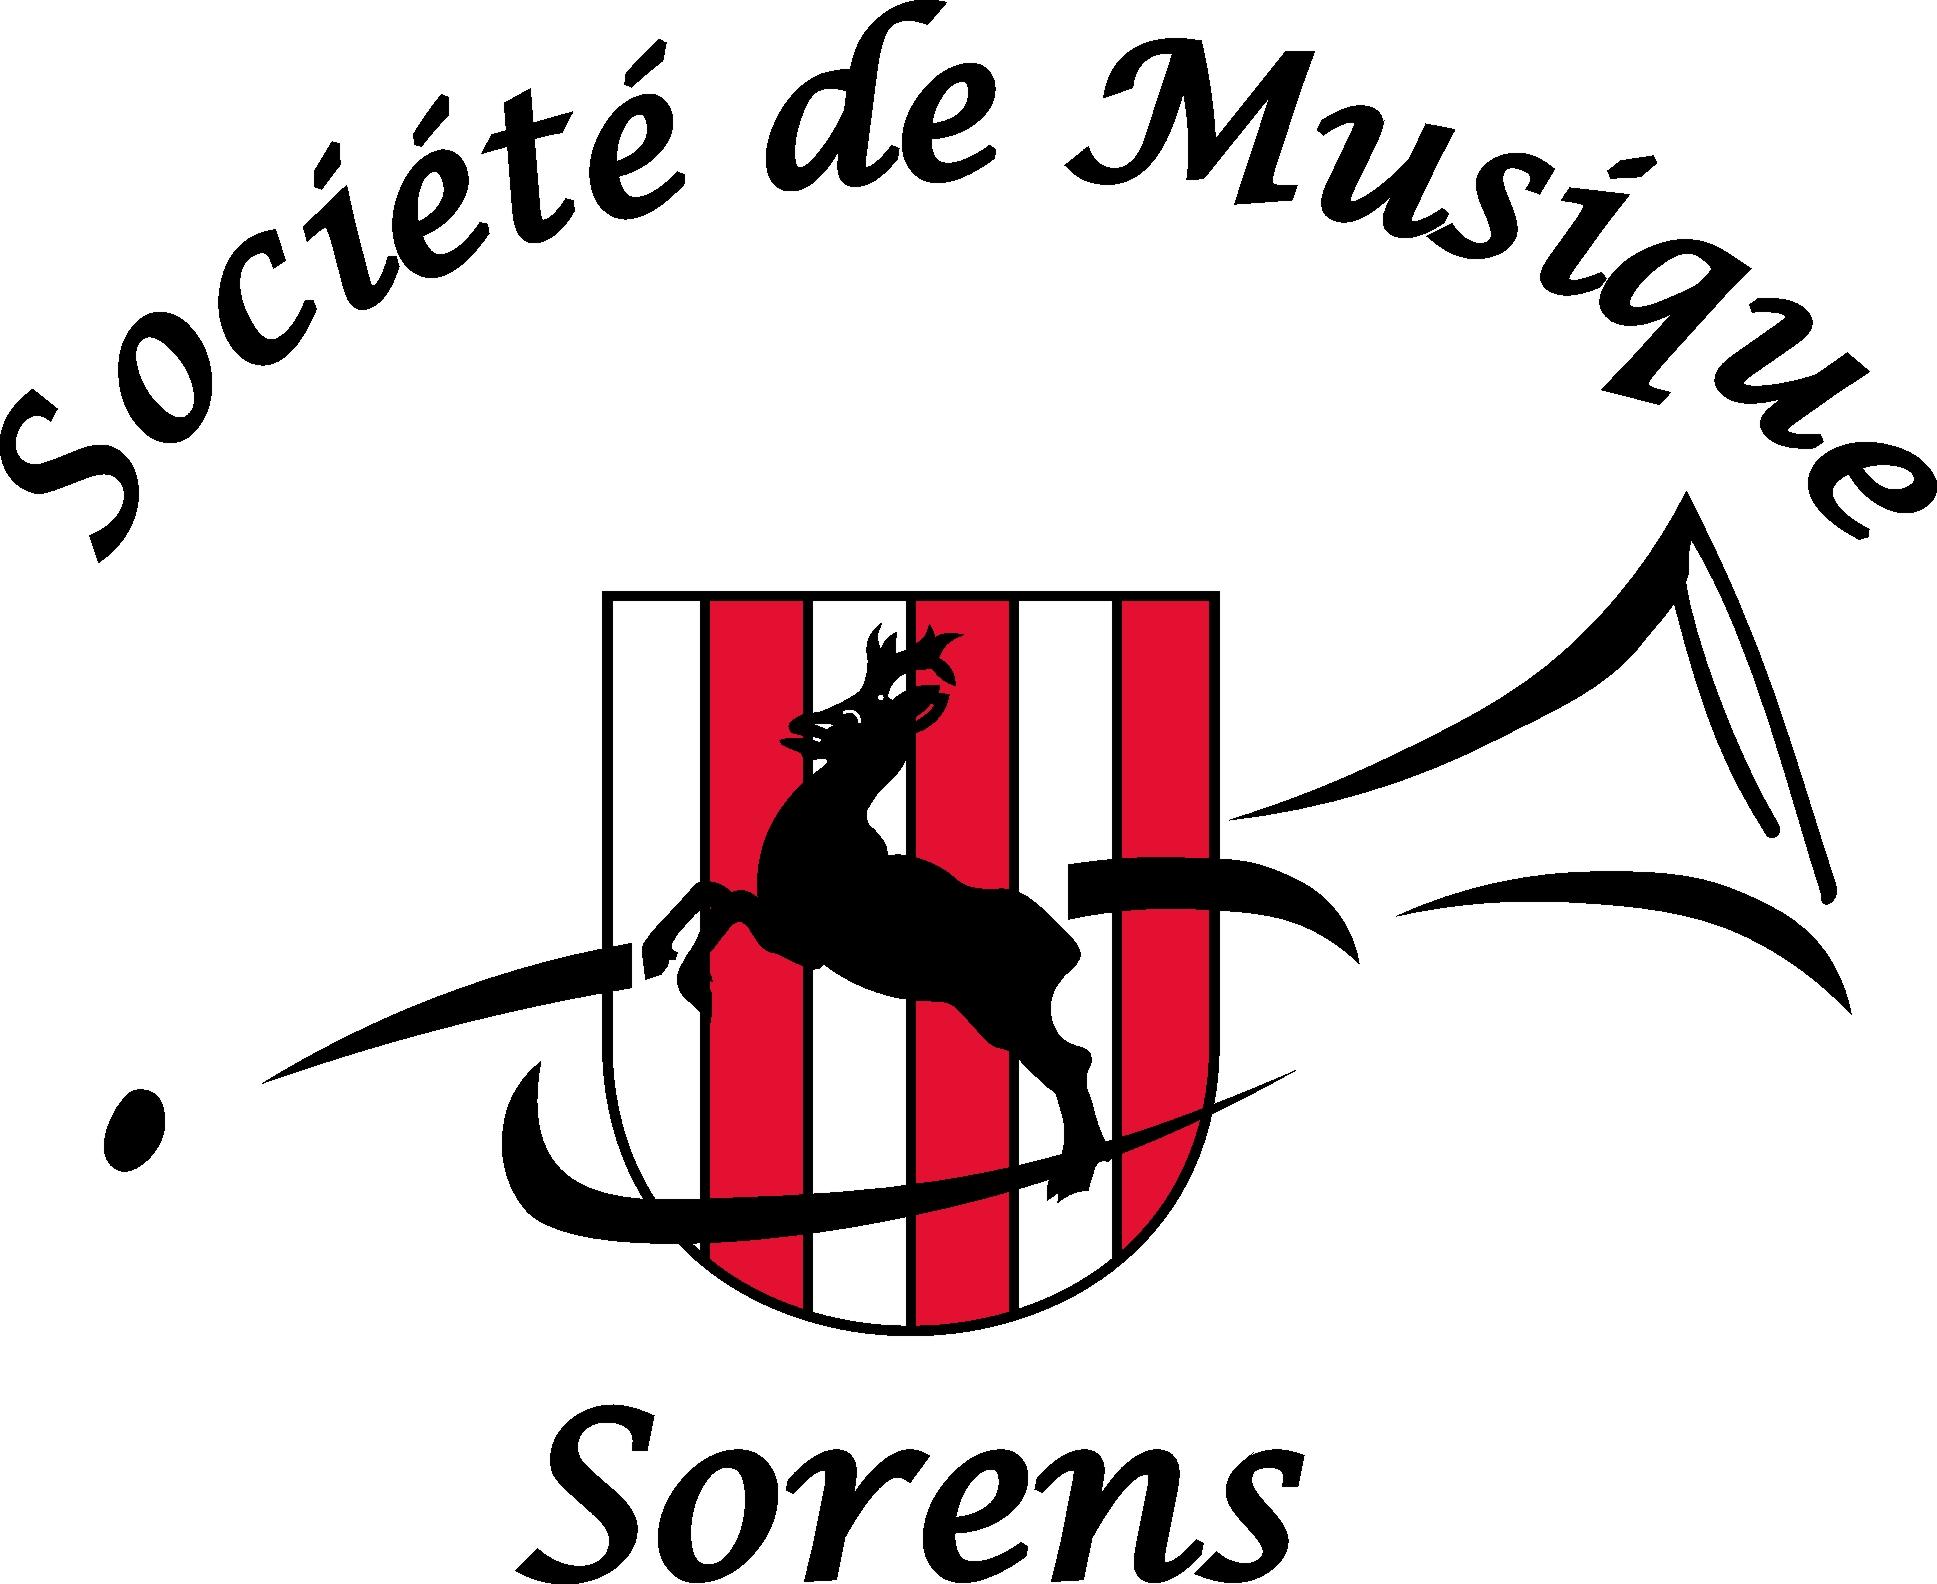 Société de Musique de Sorens